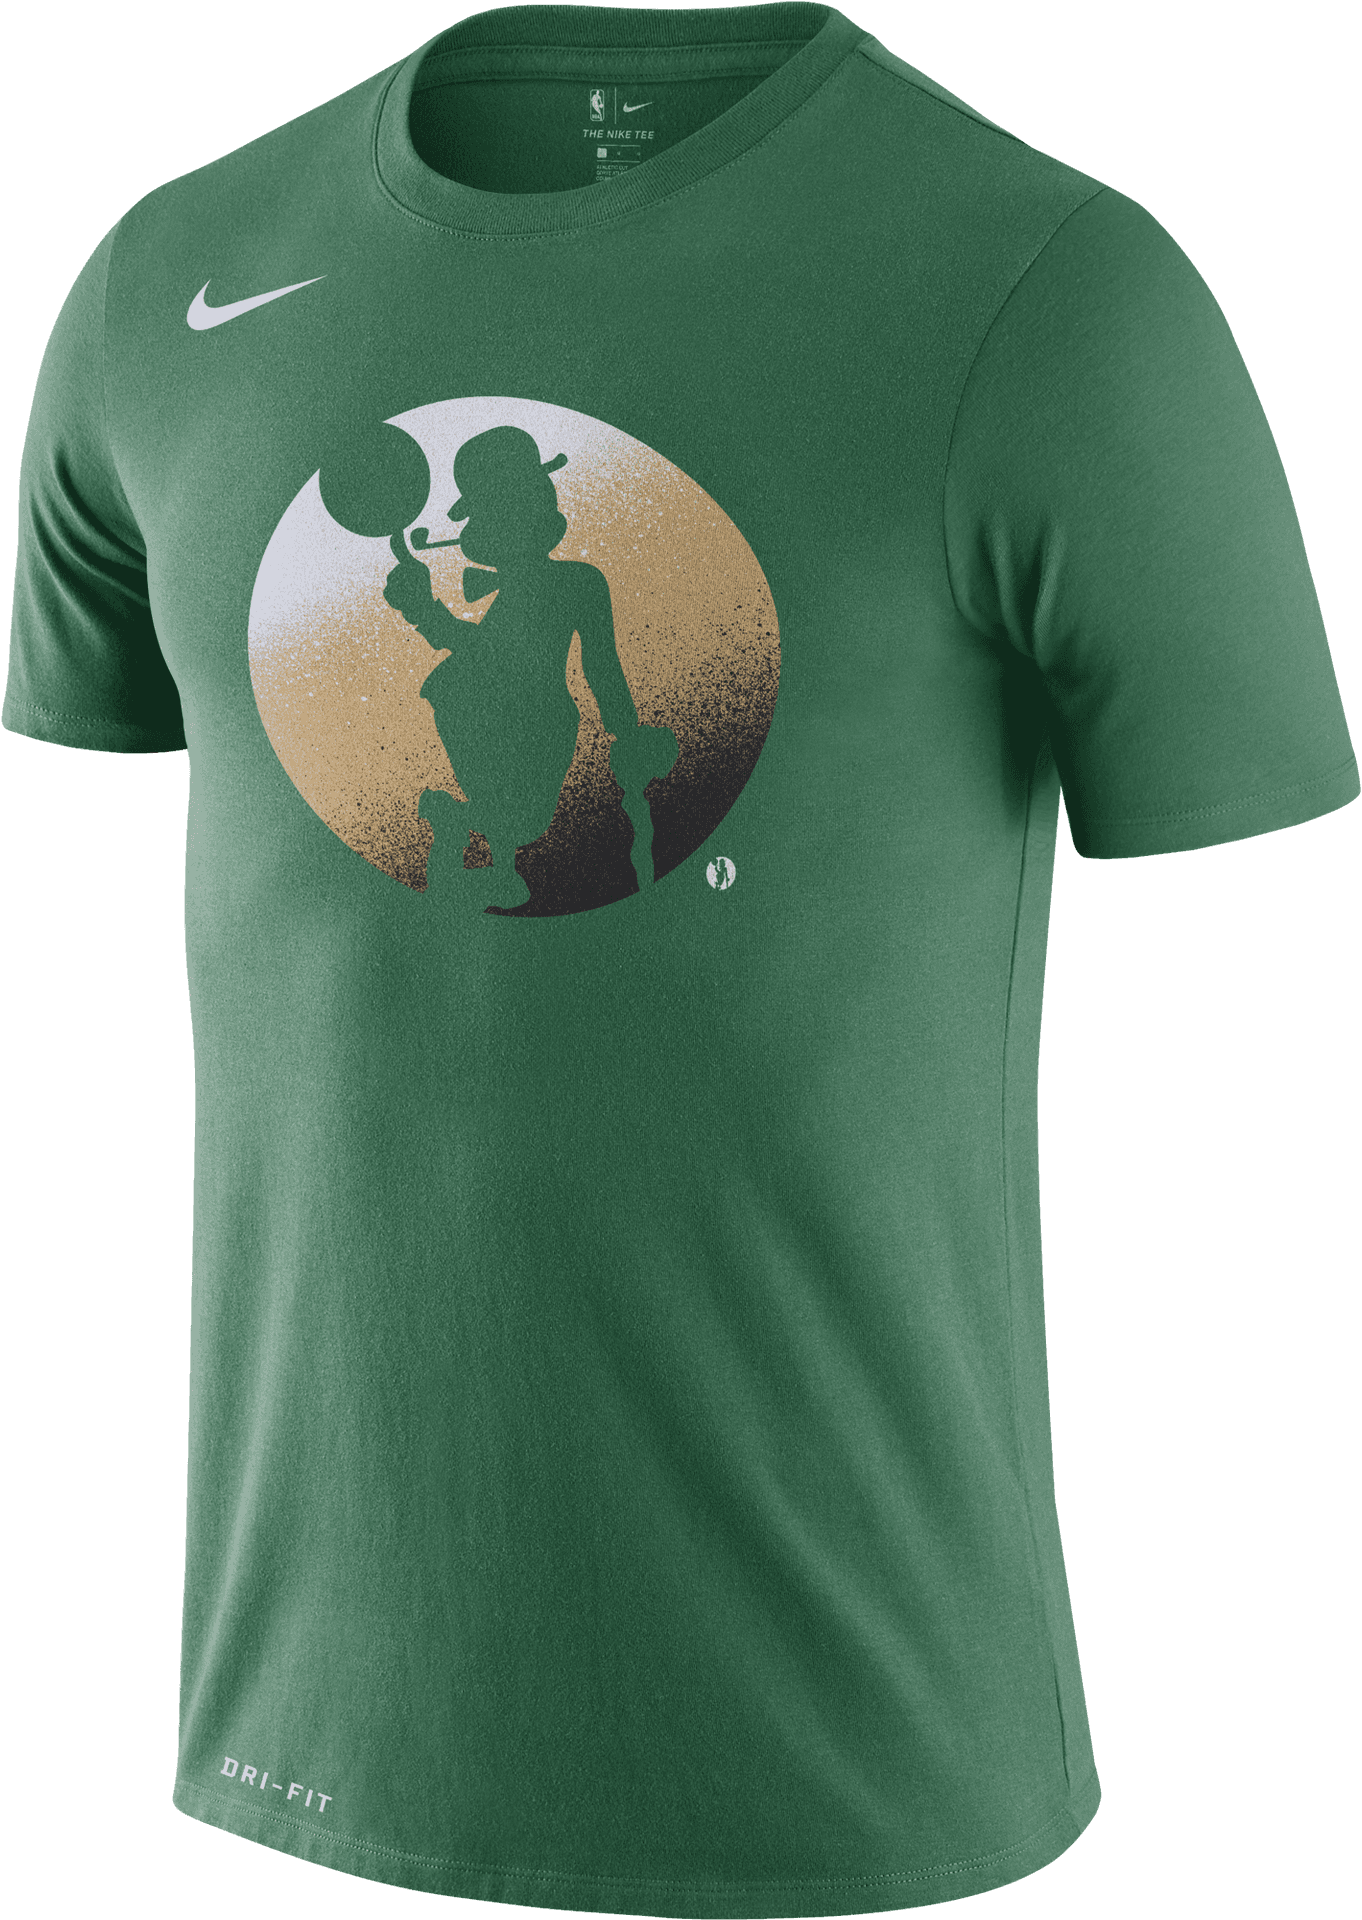 Celtics Logo Nike T Shirt PNG